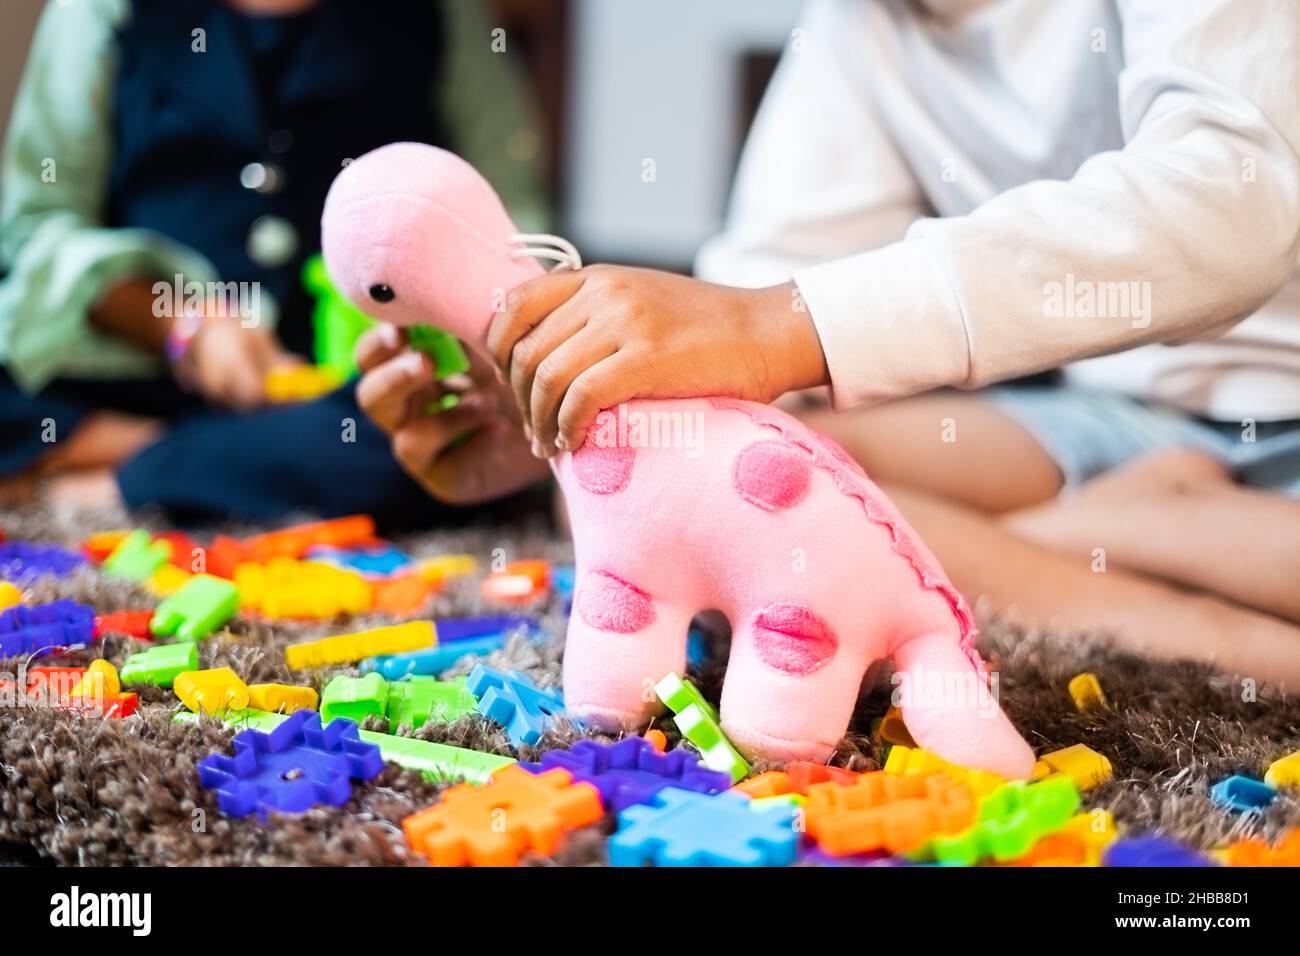 Zwei nicht erkennbare kleine Geschwister Kinder spielen mit rosa Dinosaurier Spielzeug zu Hause - Konzept der Entwicklung von Kindern und Kinderspaß während der Ferien. Stockfoto